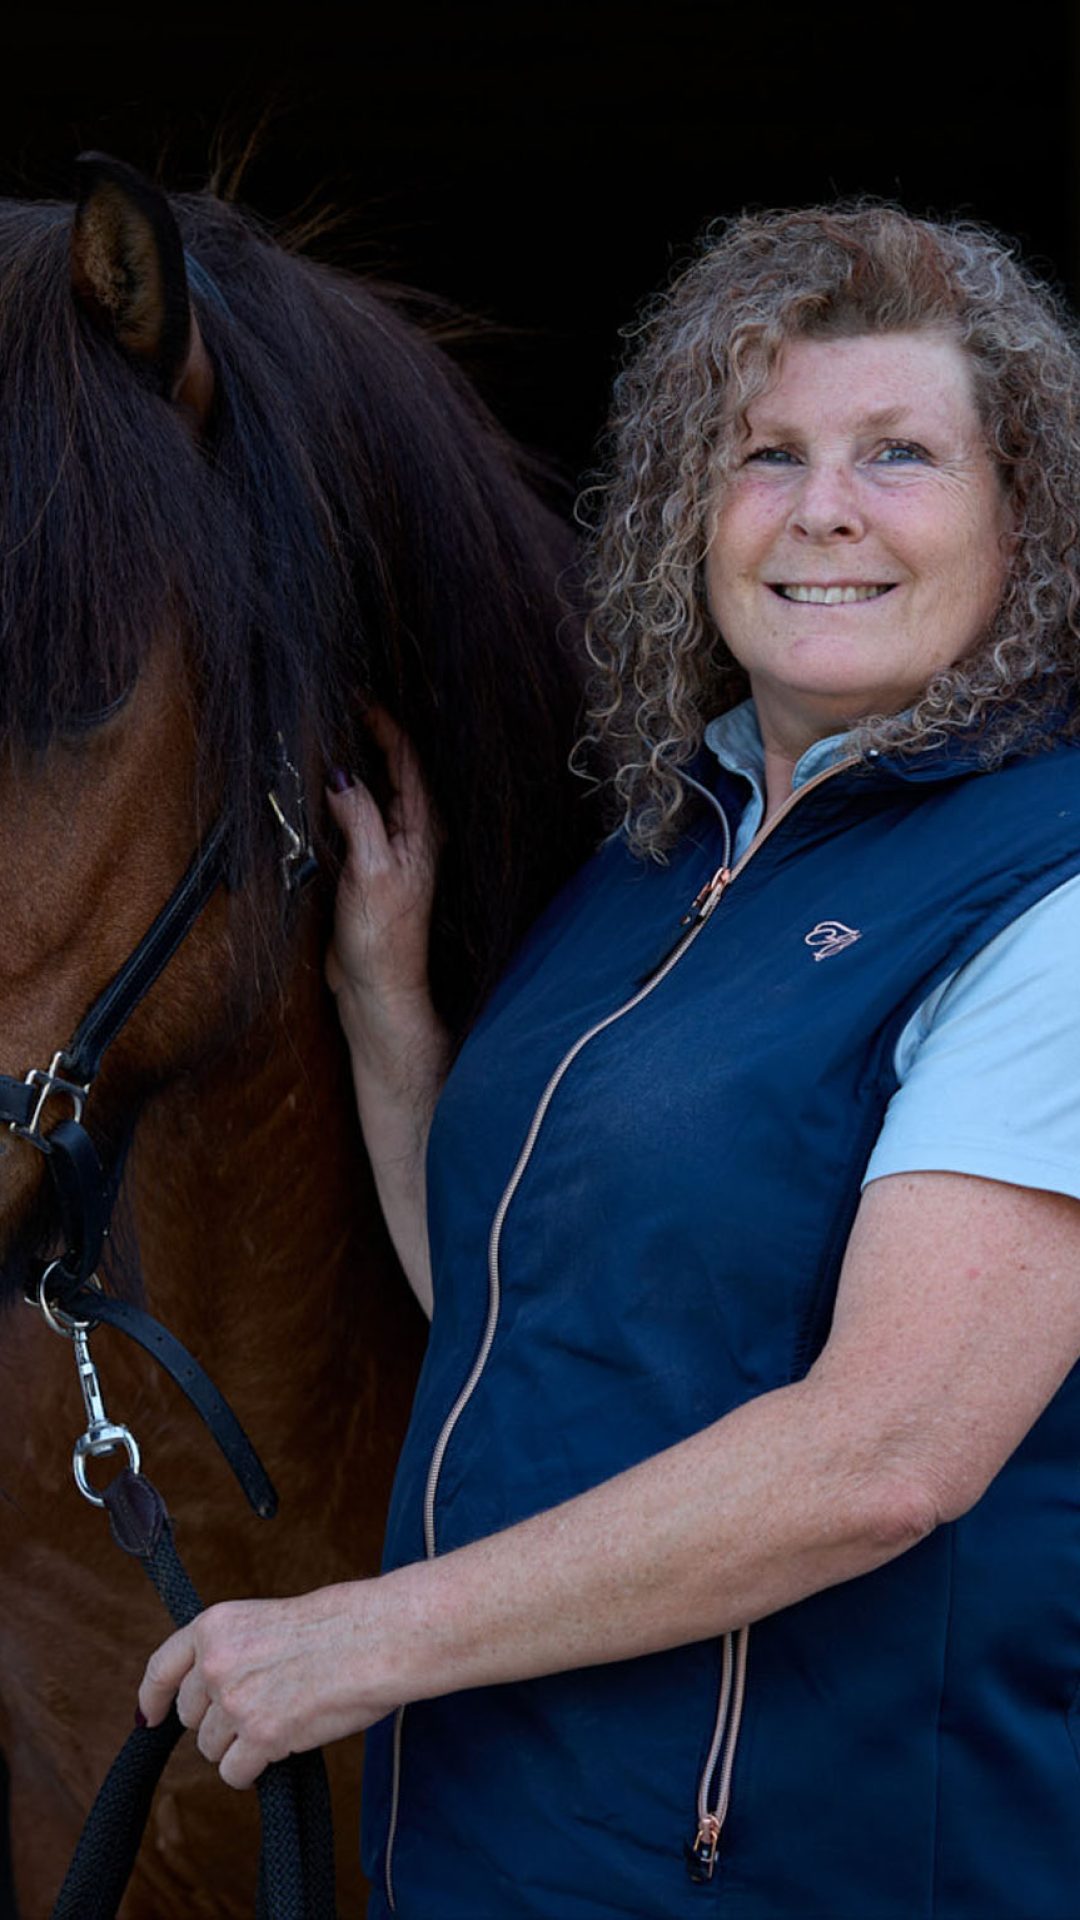 Karin neben einem Pferd stehend.